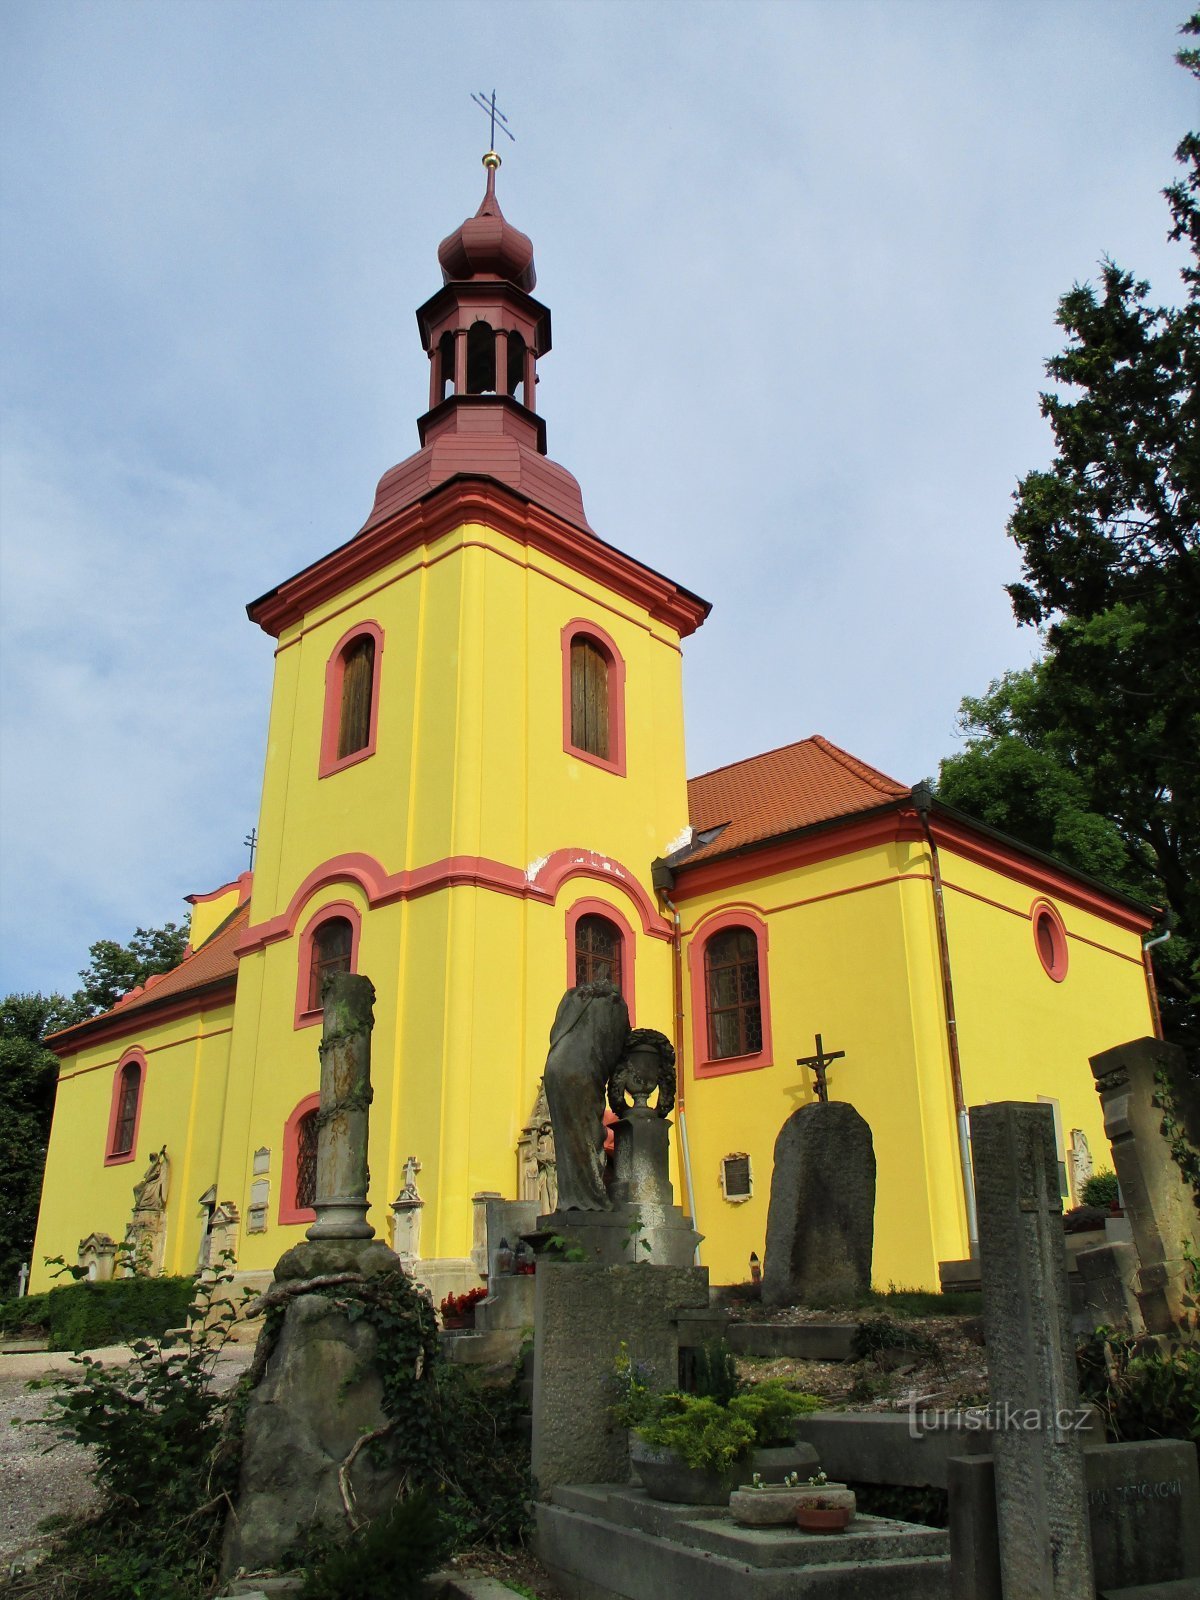 Église du cimetière de St. Gothard, évêque (Hořice, 26.7.2020/XNUMX/XNUMX)